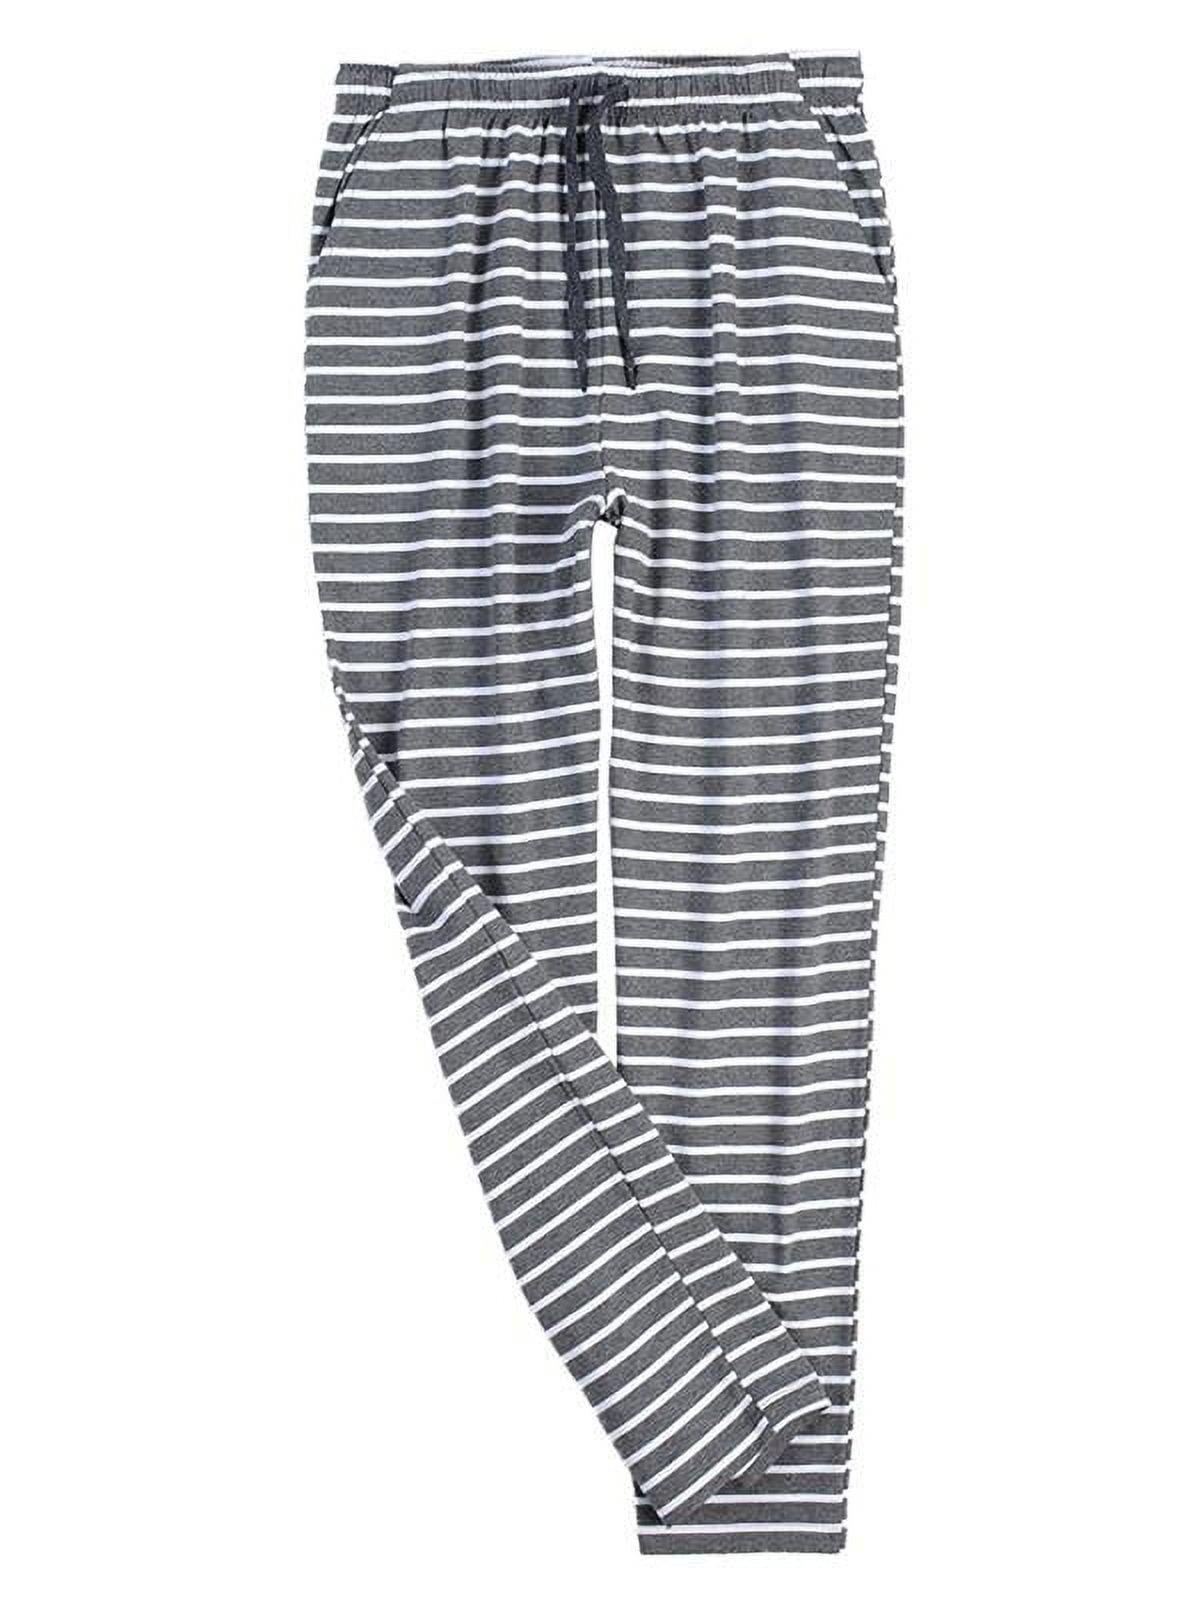 Men's Striped Pajama Pants Modal Cotton Slim Fit Lounge Sleepwear ...